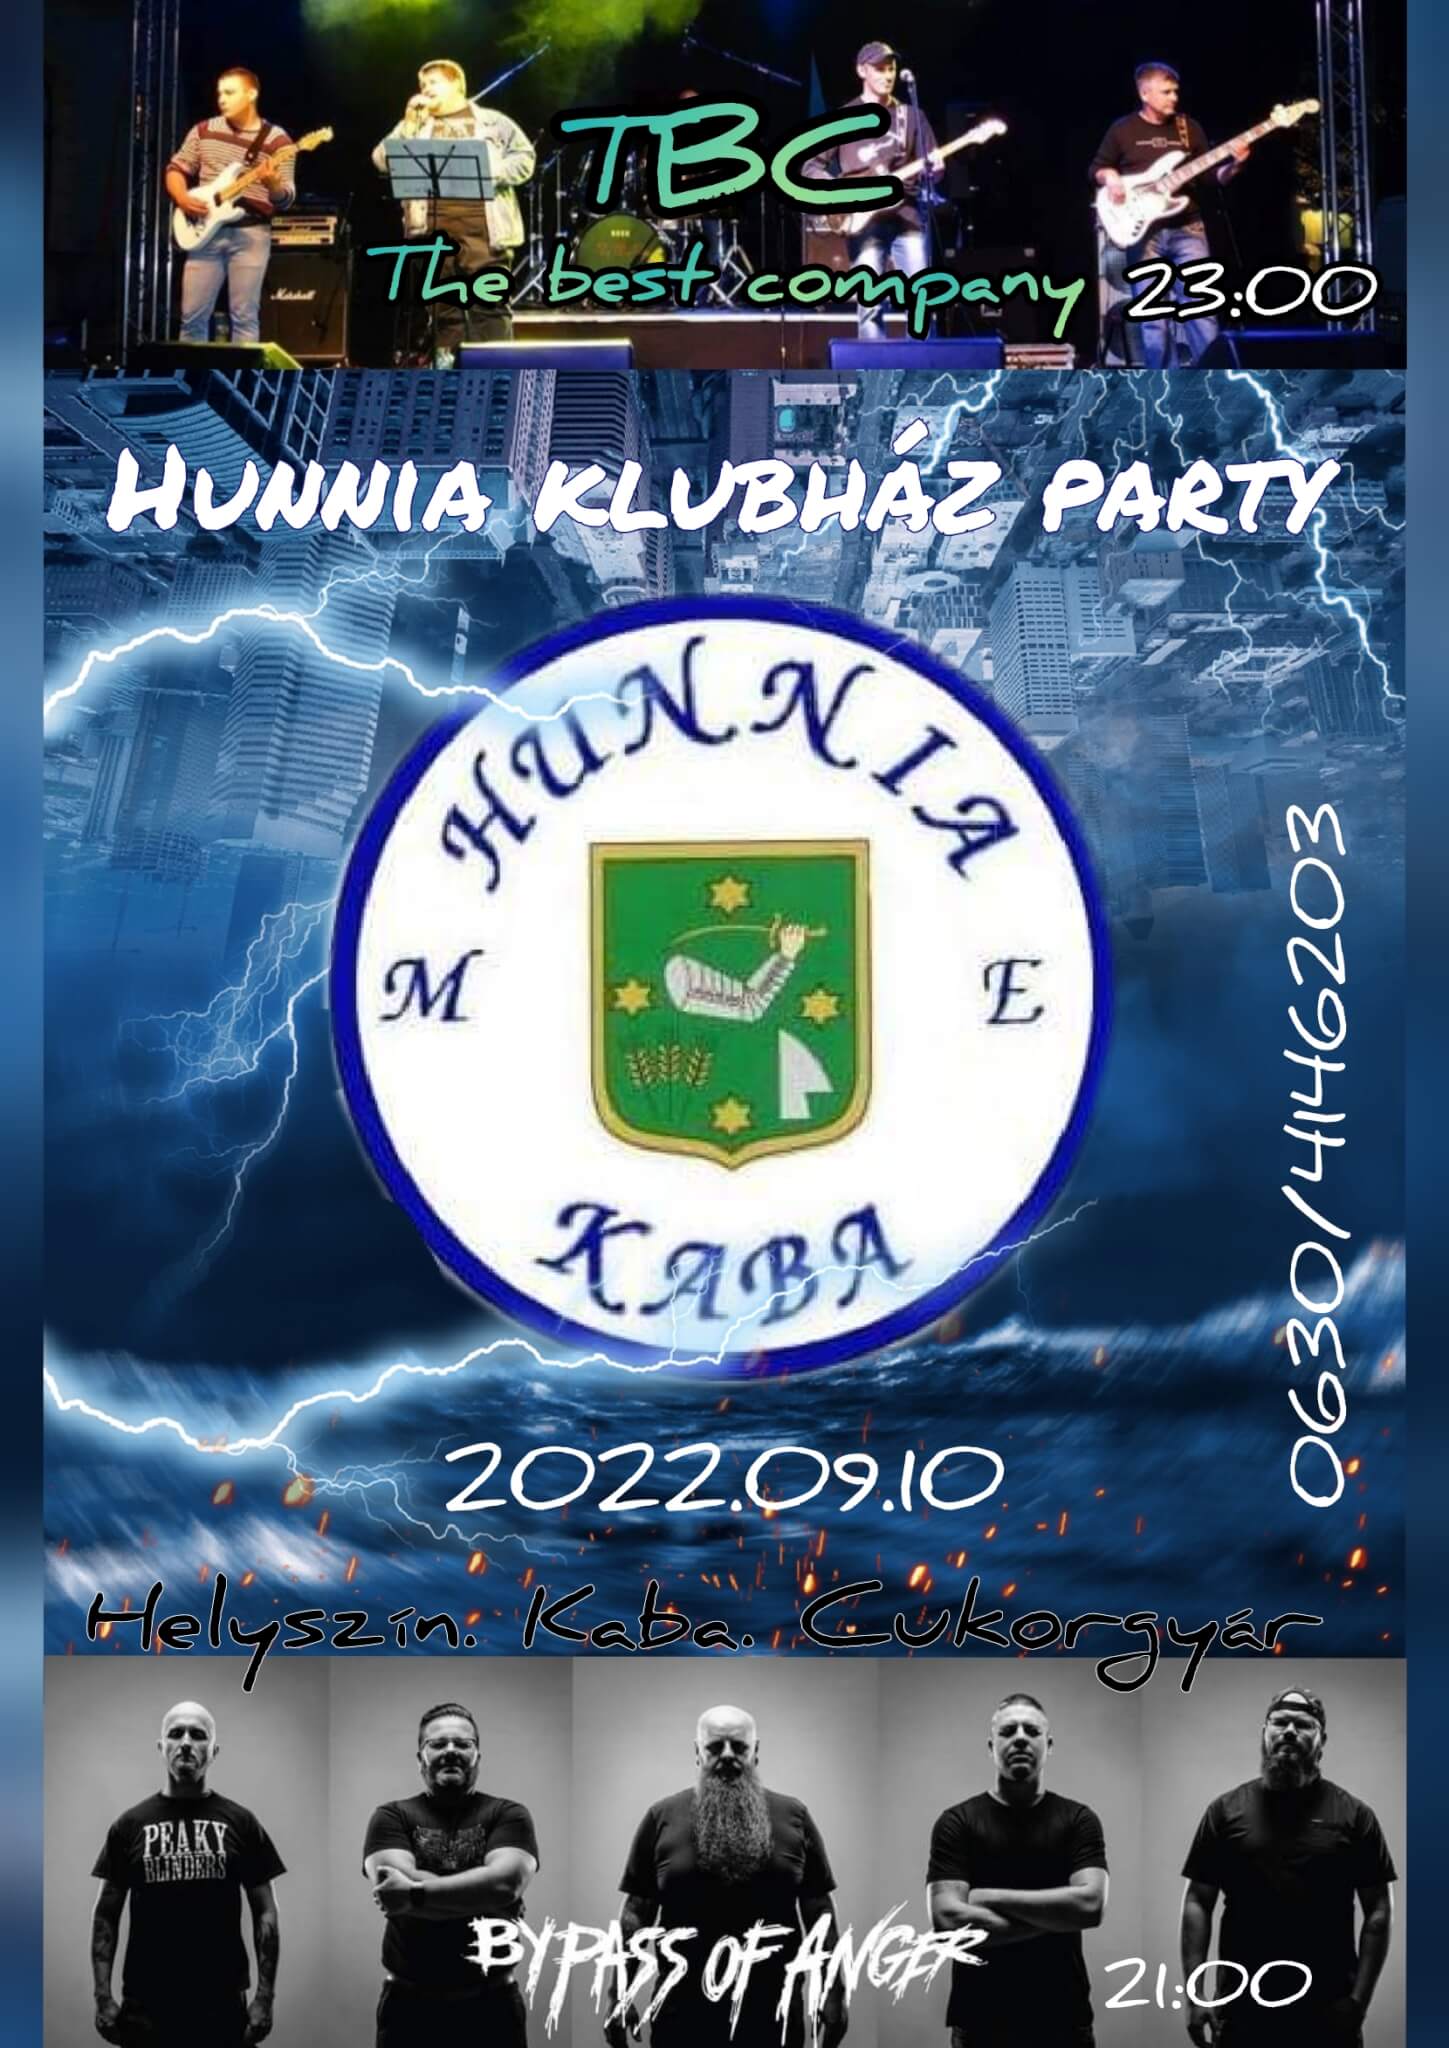 Hunnia Klubház Party